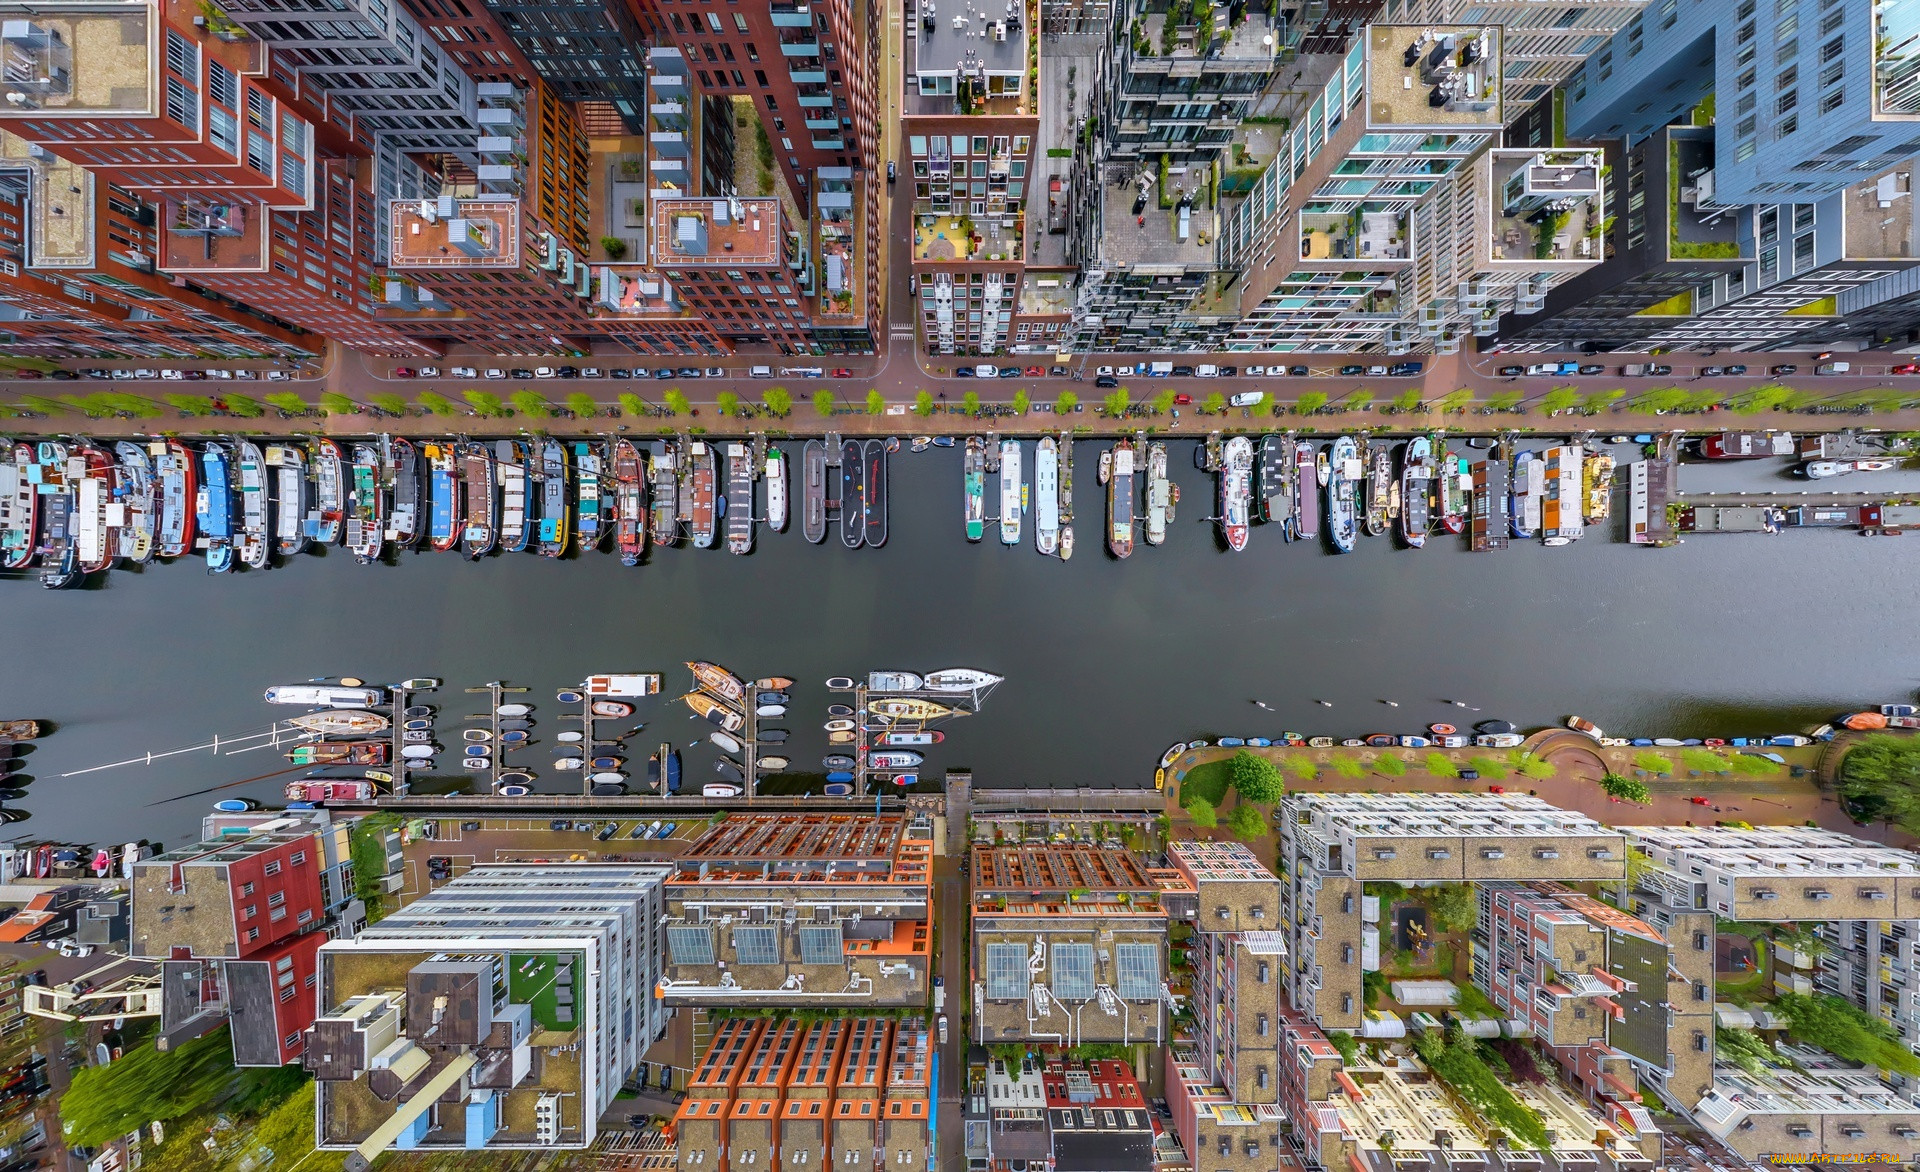 Share city. Амстердам с высоты птичьего полета. Район Westerdok, Амстердам. Нидерланды Амстердам с птичьего полета. Каналы Амстердама Нидерланды вид сверху.